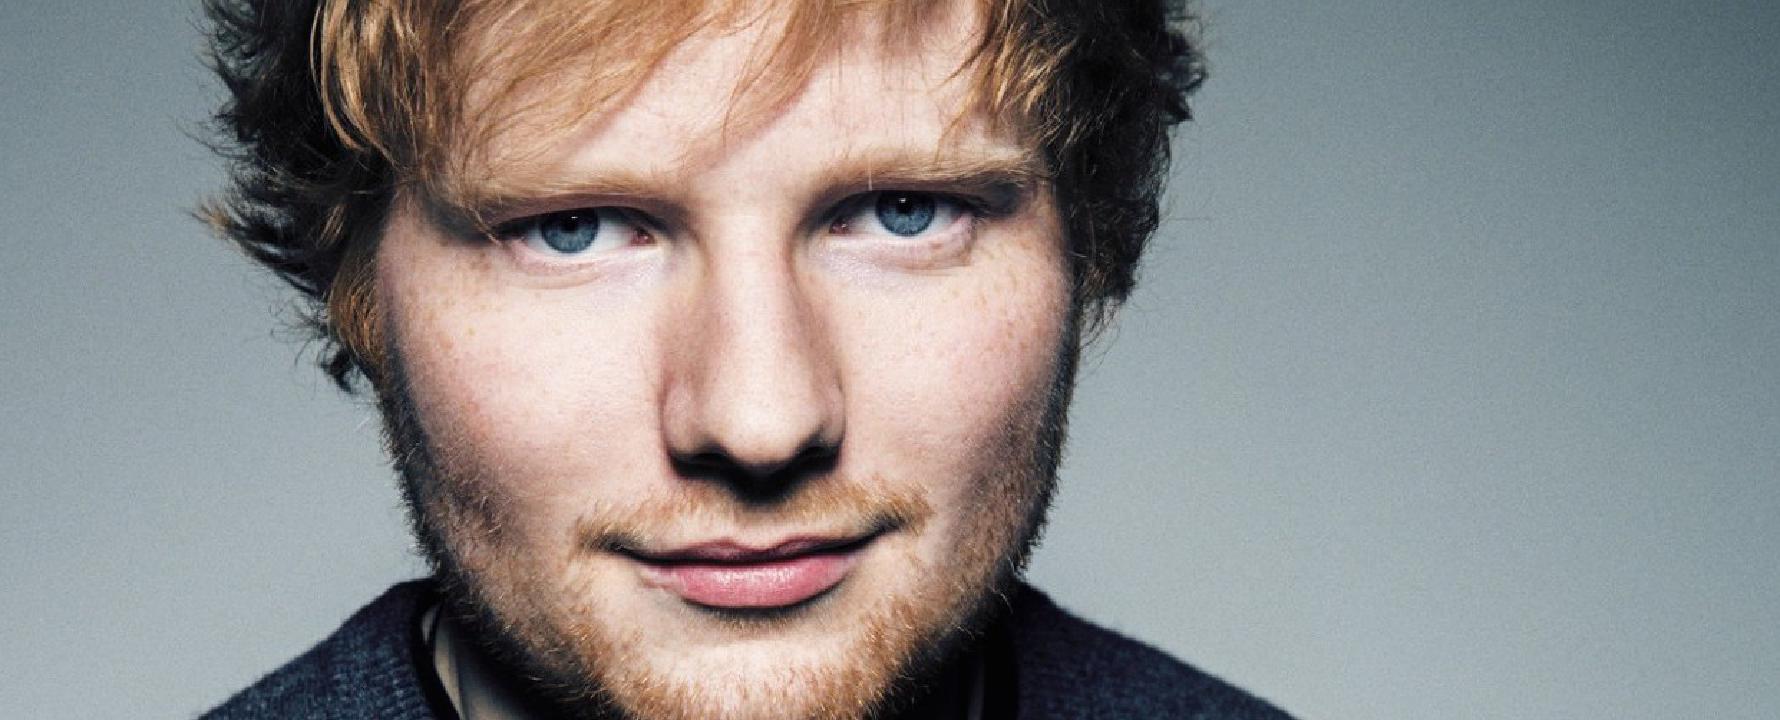 Fotografía promocional de Ed Sheeran